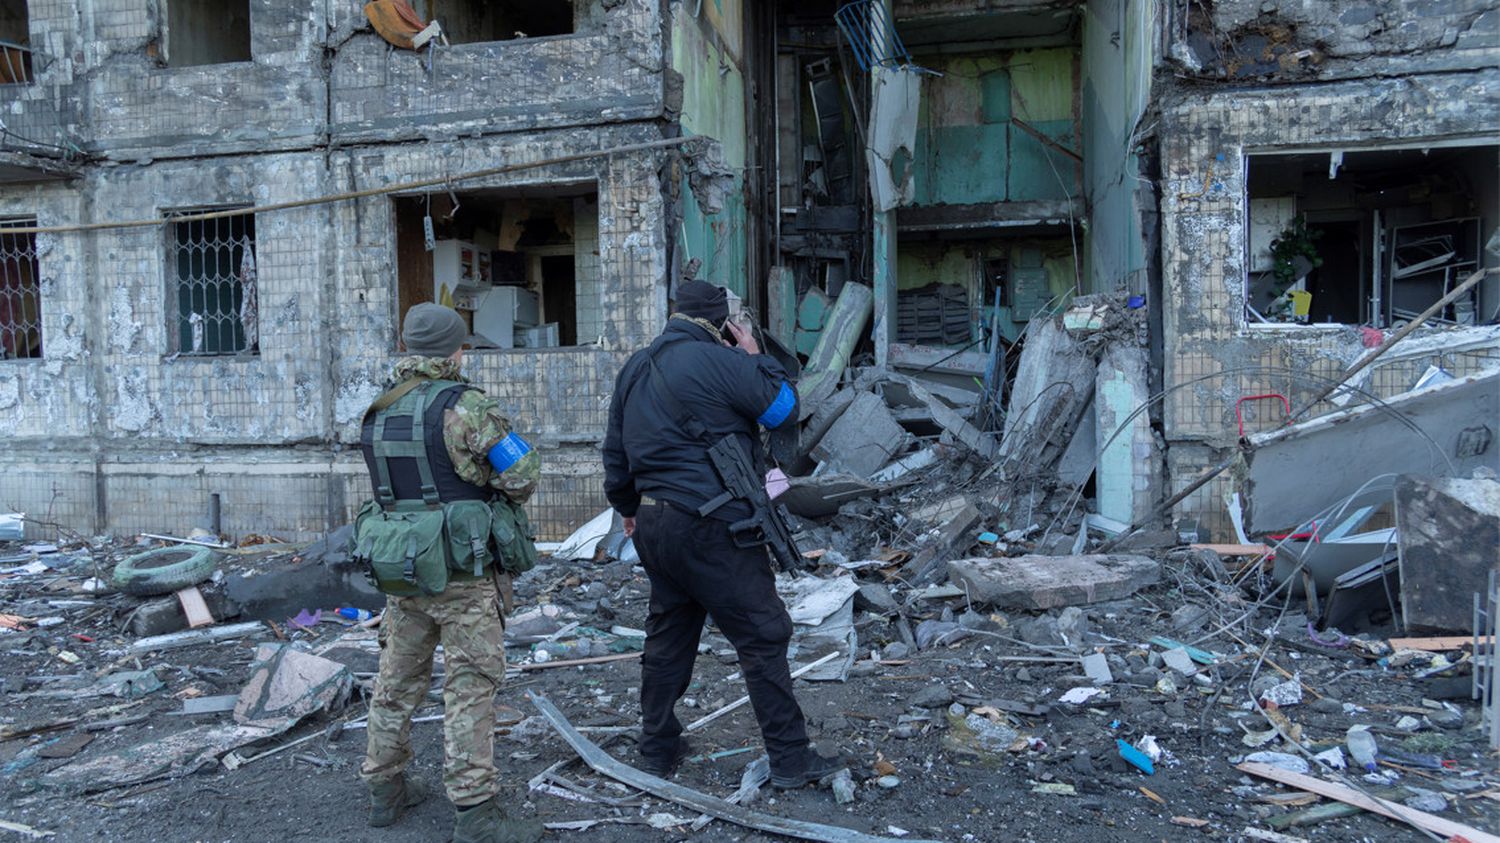 War in Ukraine: British Fox News journalist injured near kyiv
